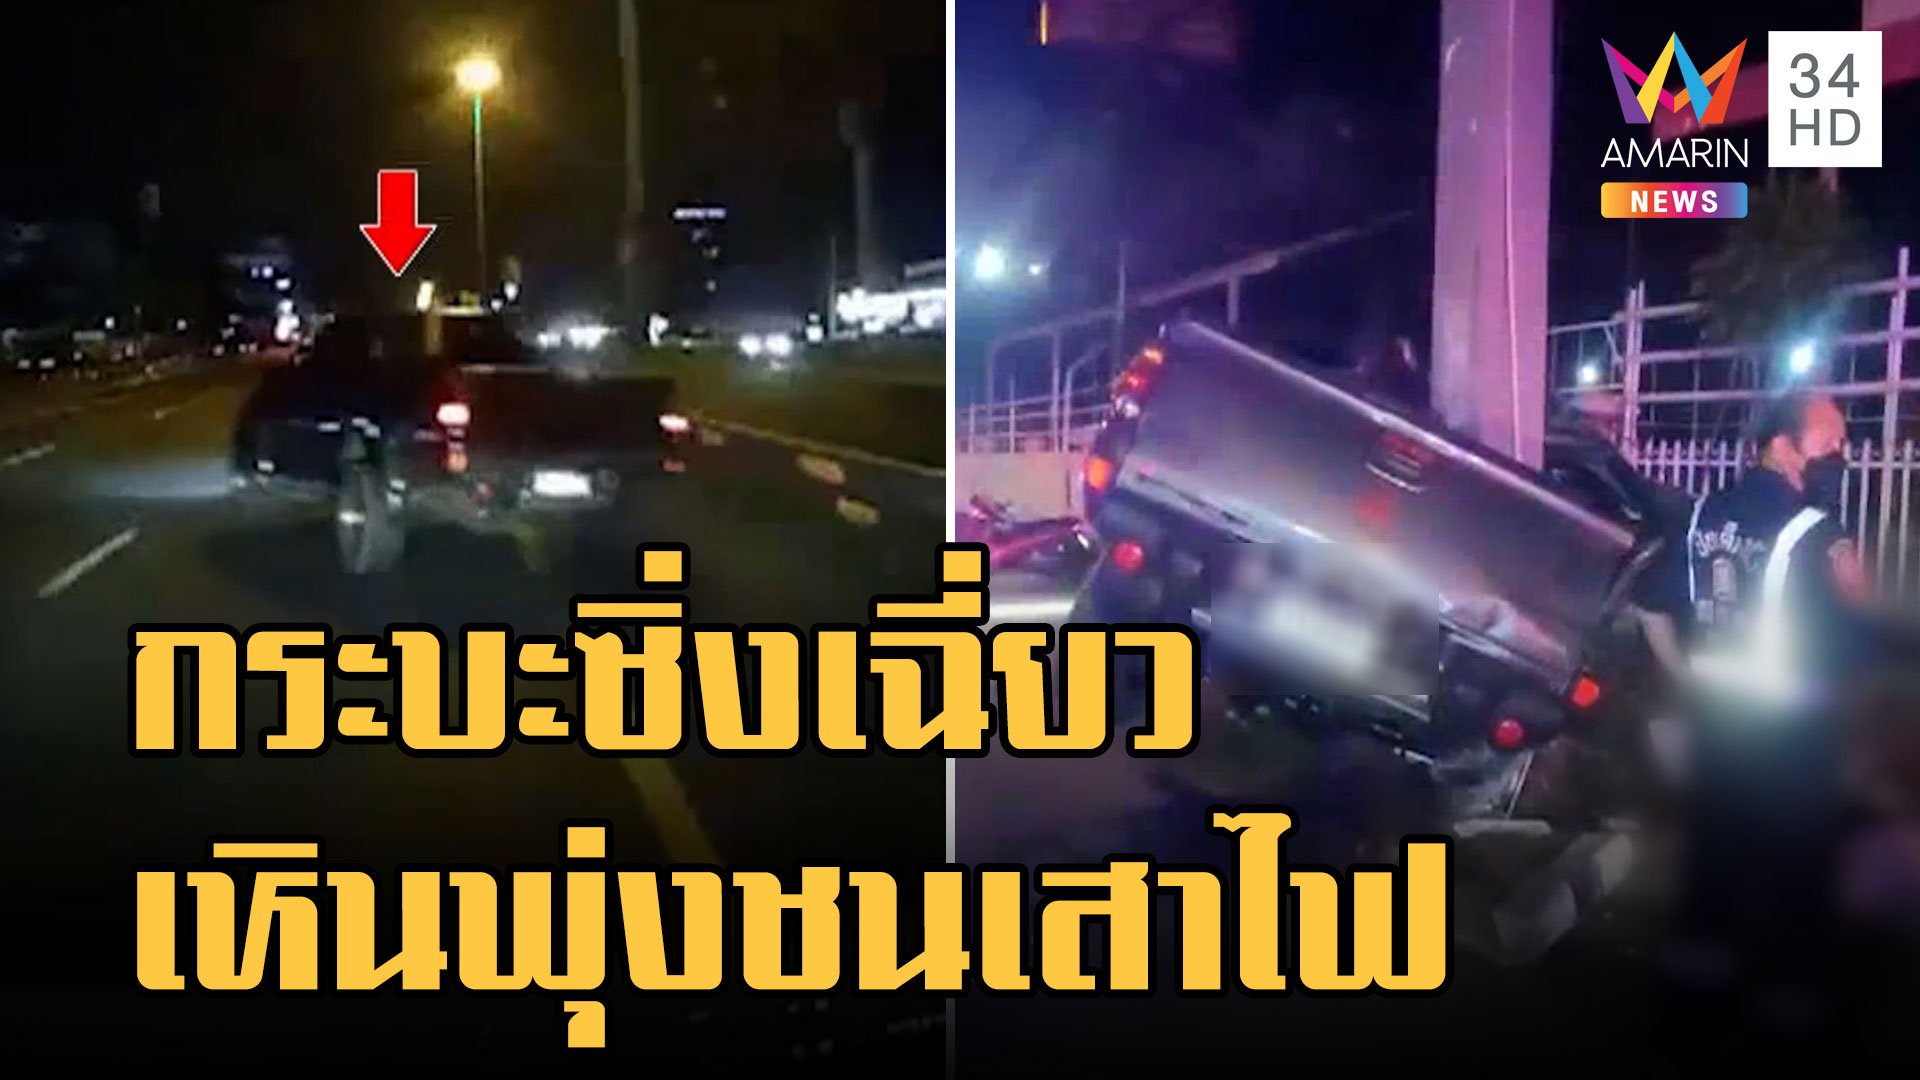  กระบะซิ่งเฉี่ยวรถตู้เหินอัดเสาไฟยับ | ข่าวเที่ยงอมรินทร์ | 18 ต.ค. 65 | AMARIN TVHD34